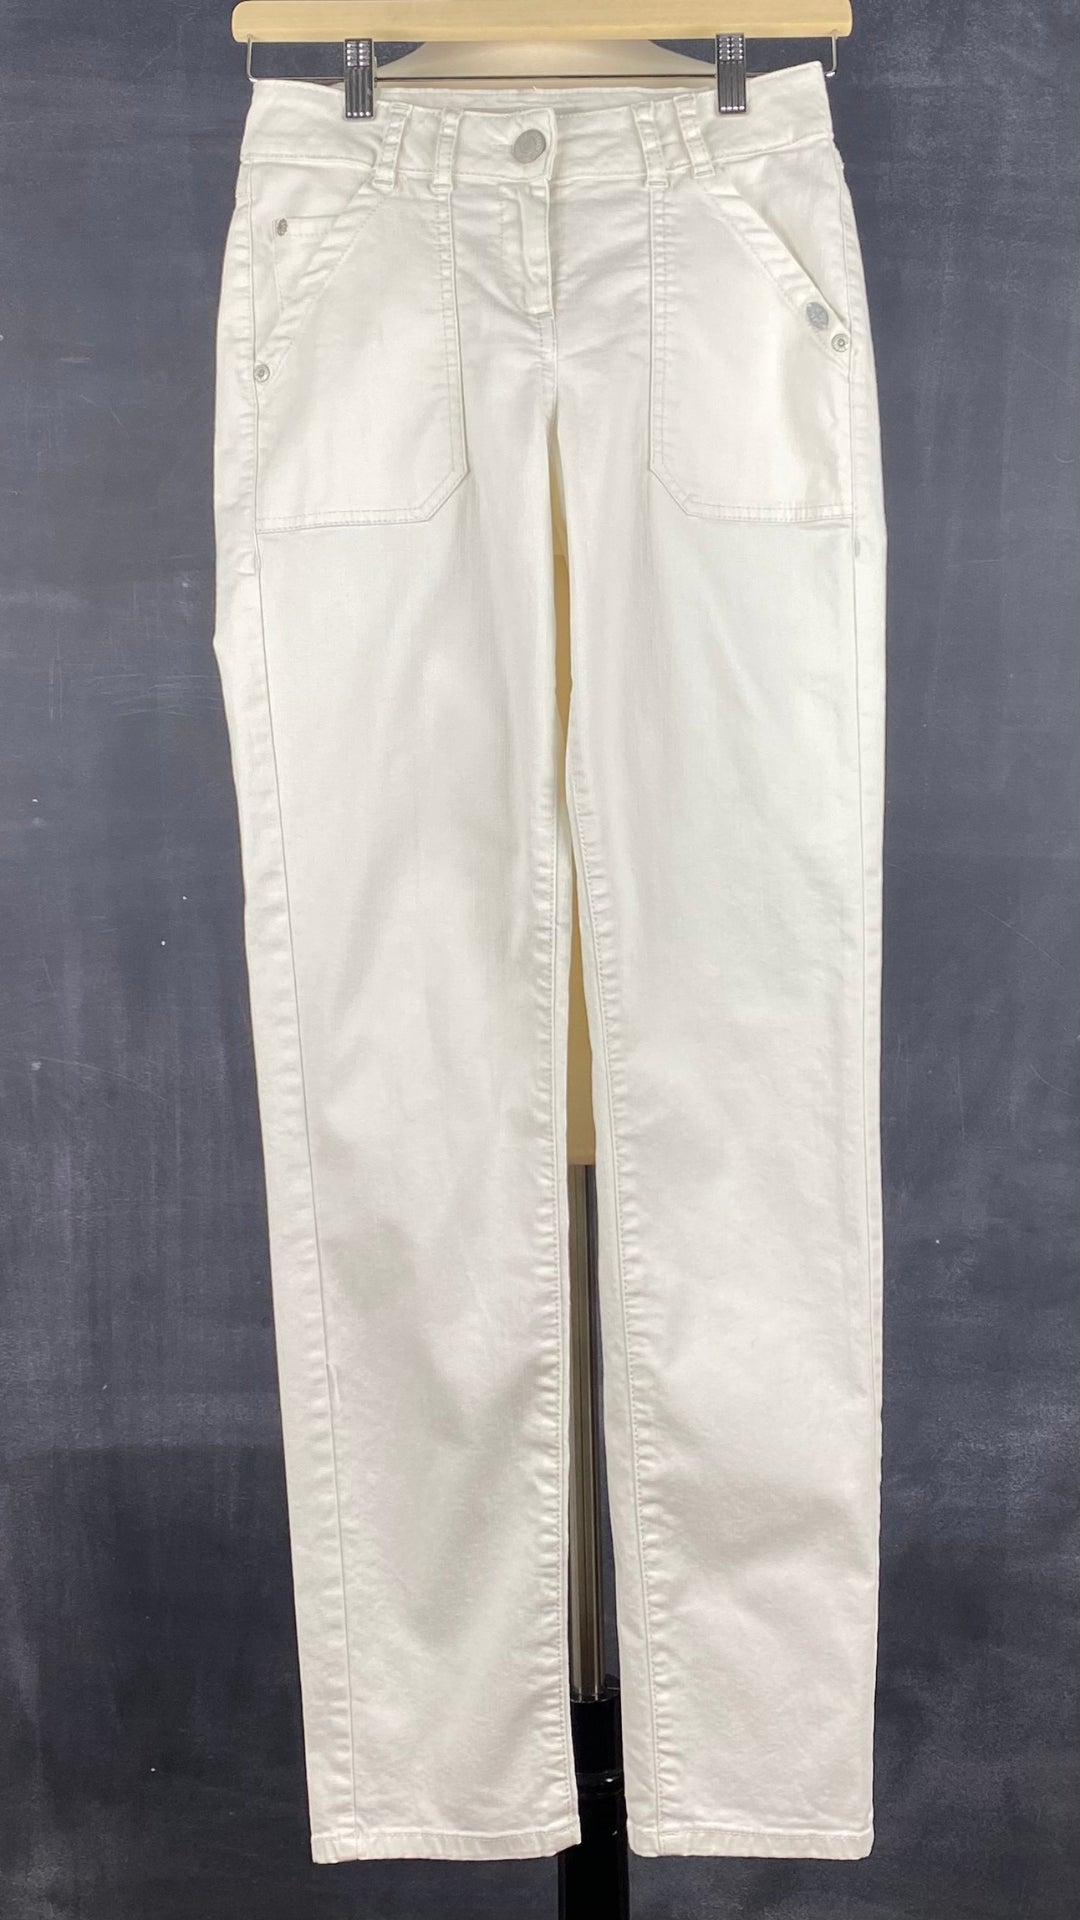 Pantalon crème à jambe droite poches plaquées, Mat de Misaine, taille 34 (xs). Vue de face.